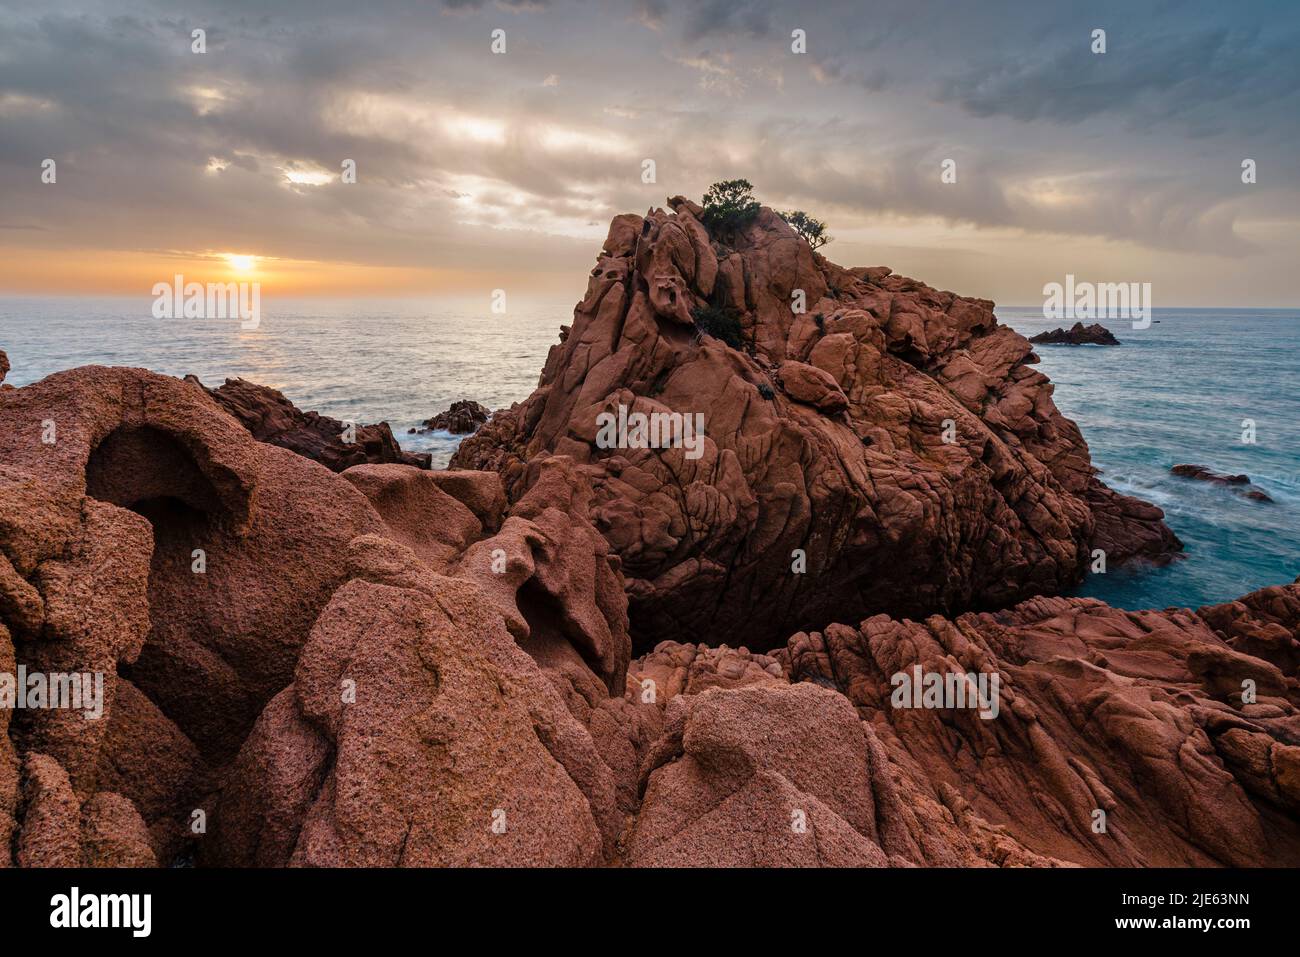 Salida del sol con el espectacular cielo en la bahía de Cocorocci con las rocas de pórfido rojo, guijarros grises y Monte Cartucceddu en la costa este de Cerdeña Foto de stock